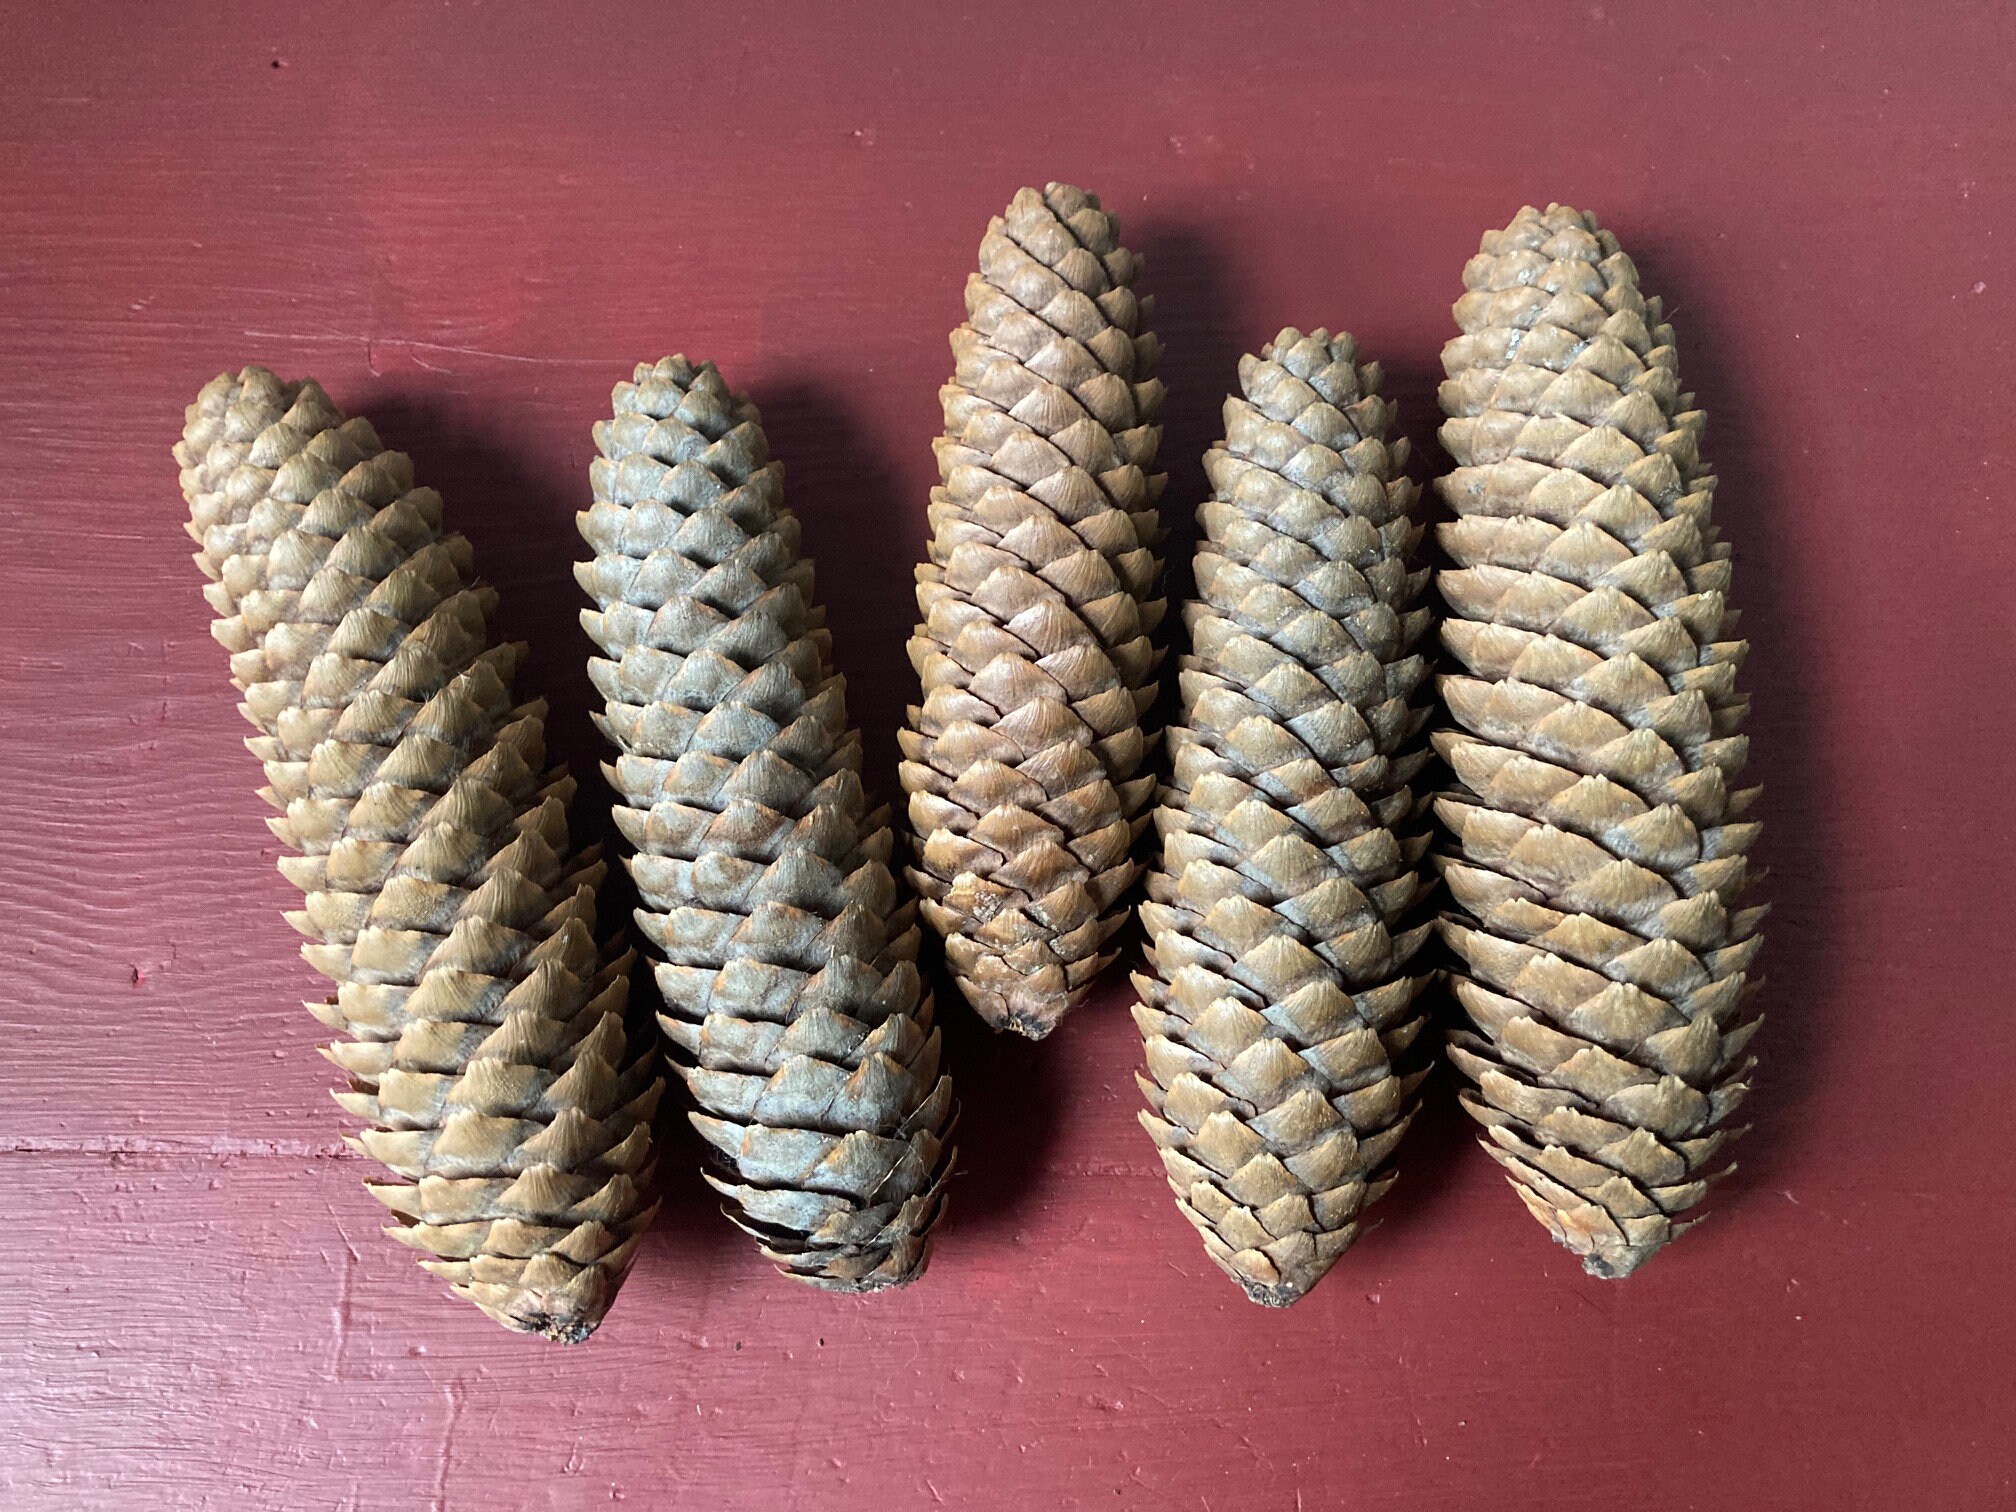 Pine Cones, Colorado Blue Spruce Pine Cones, Spruce Pine Cones, Pinecones